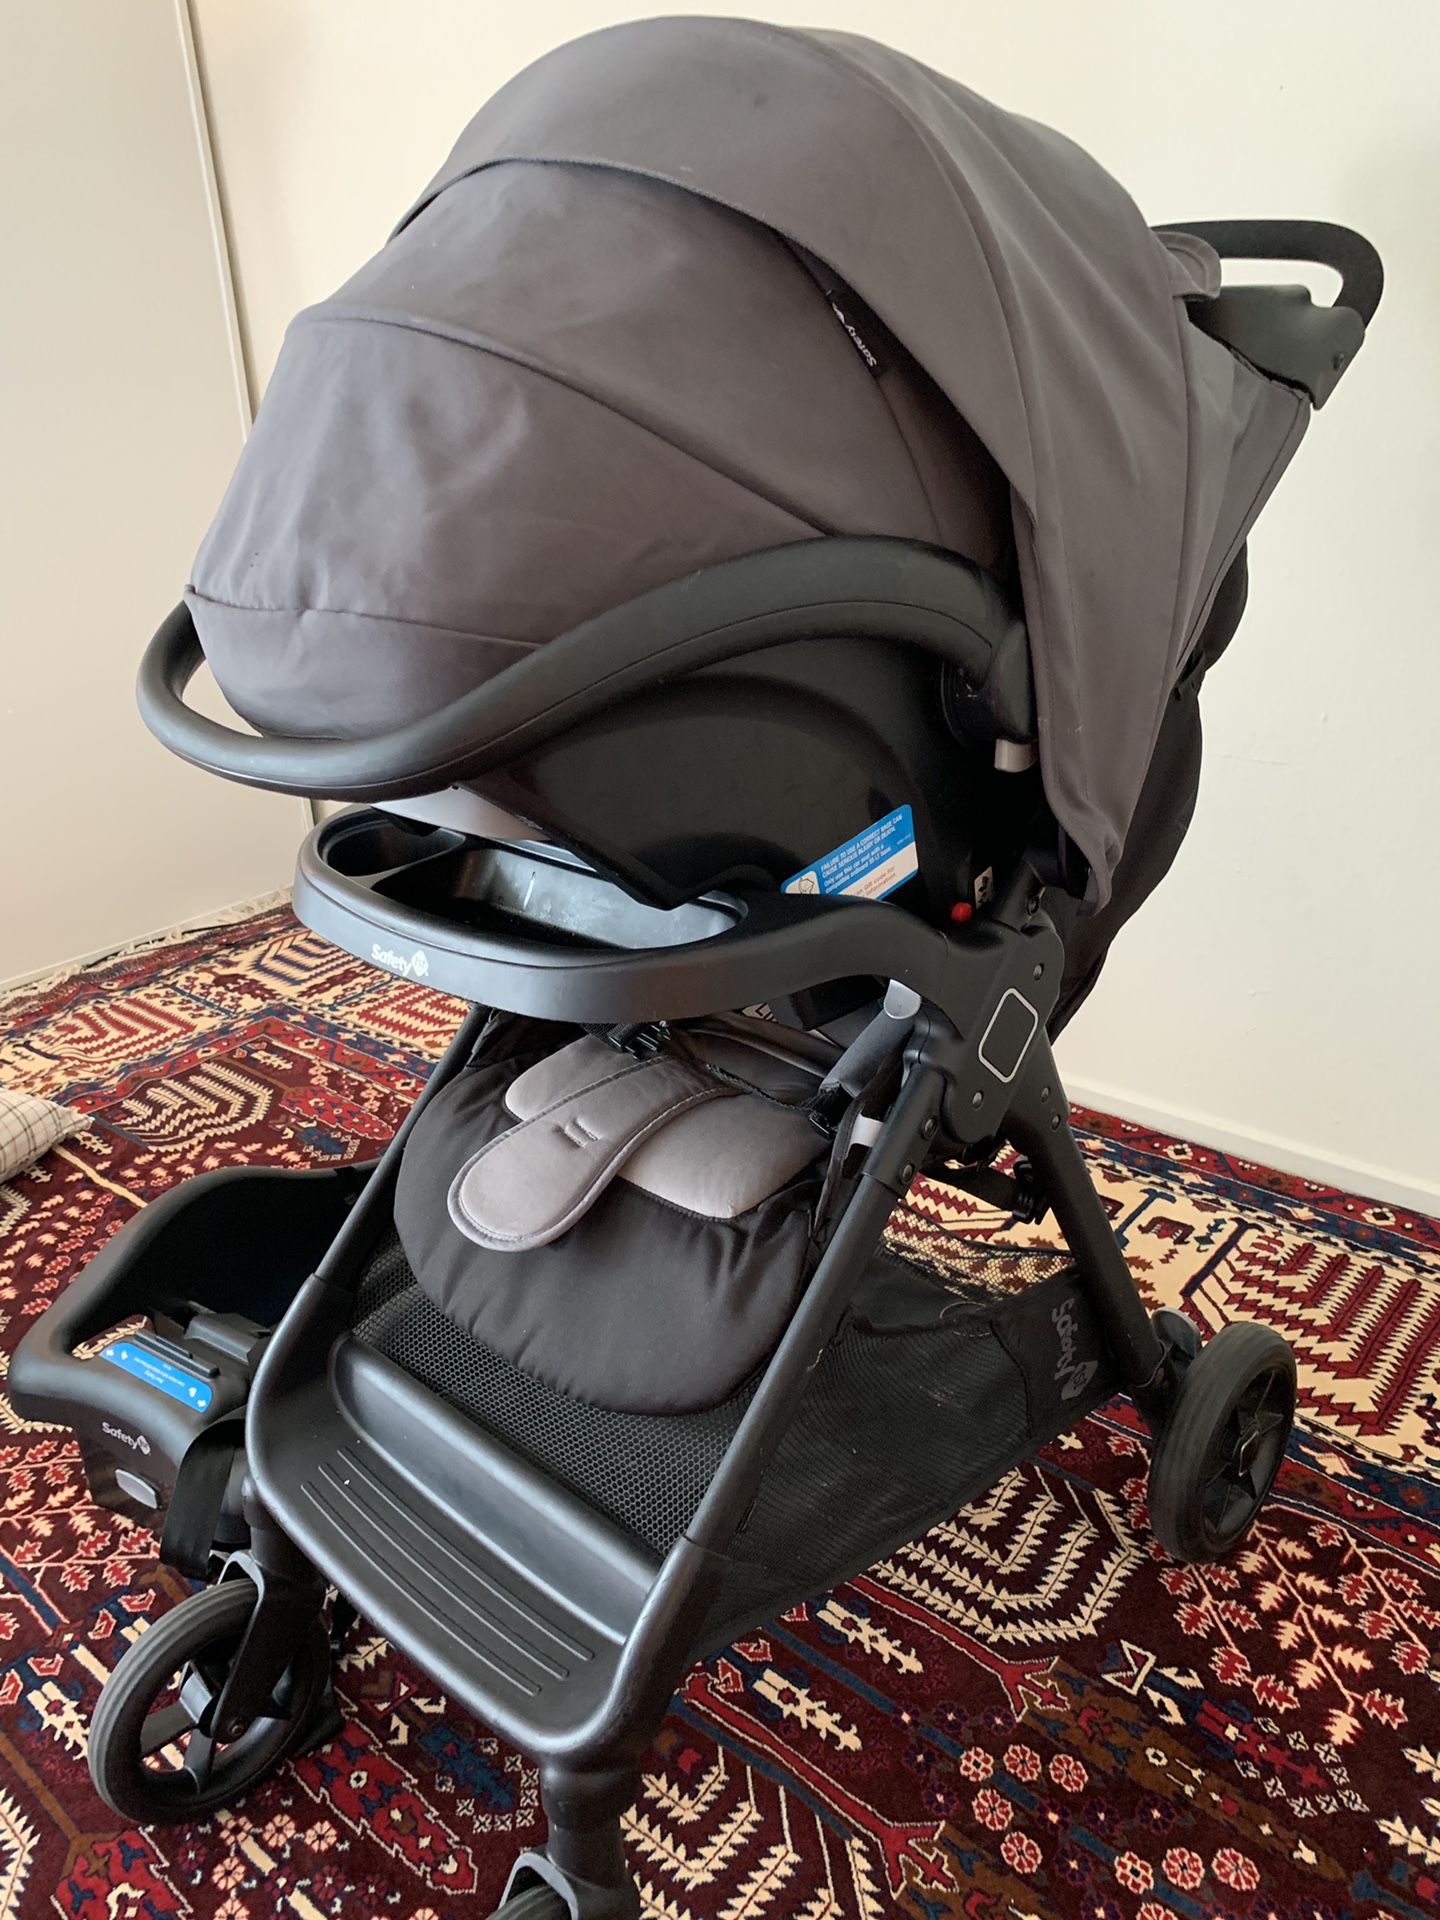 Baby seat, stroller,base